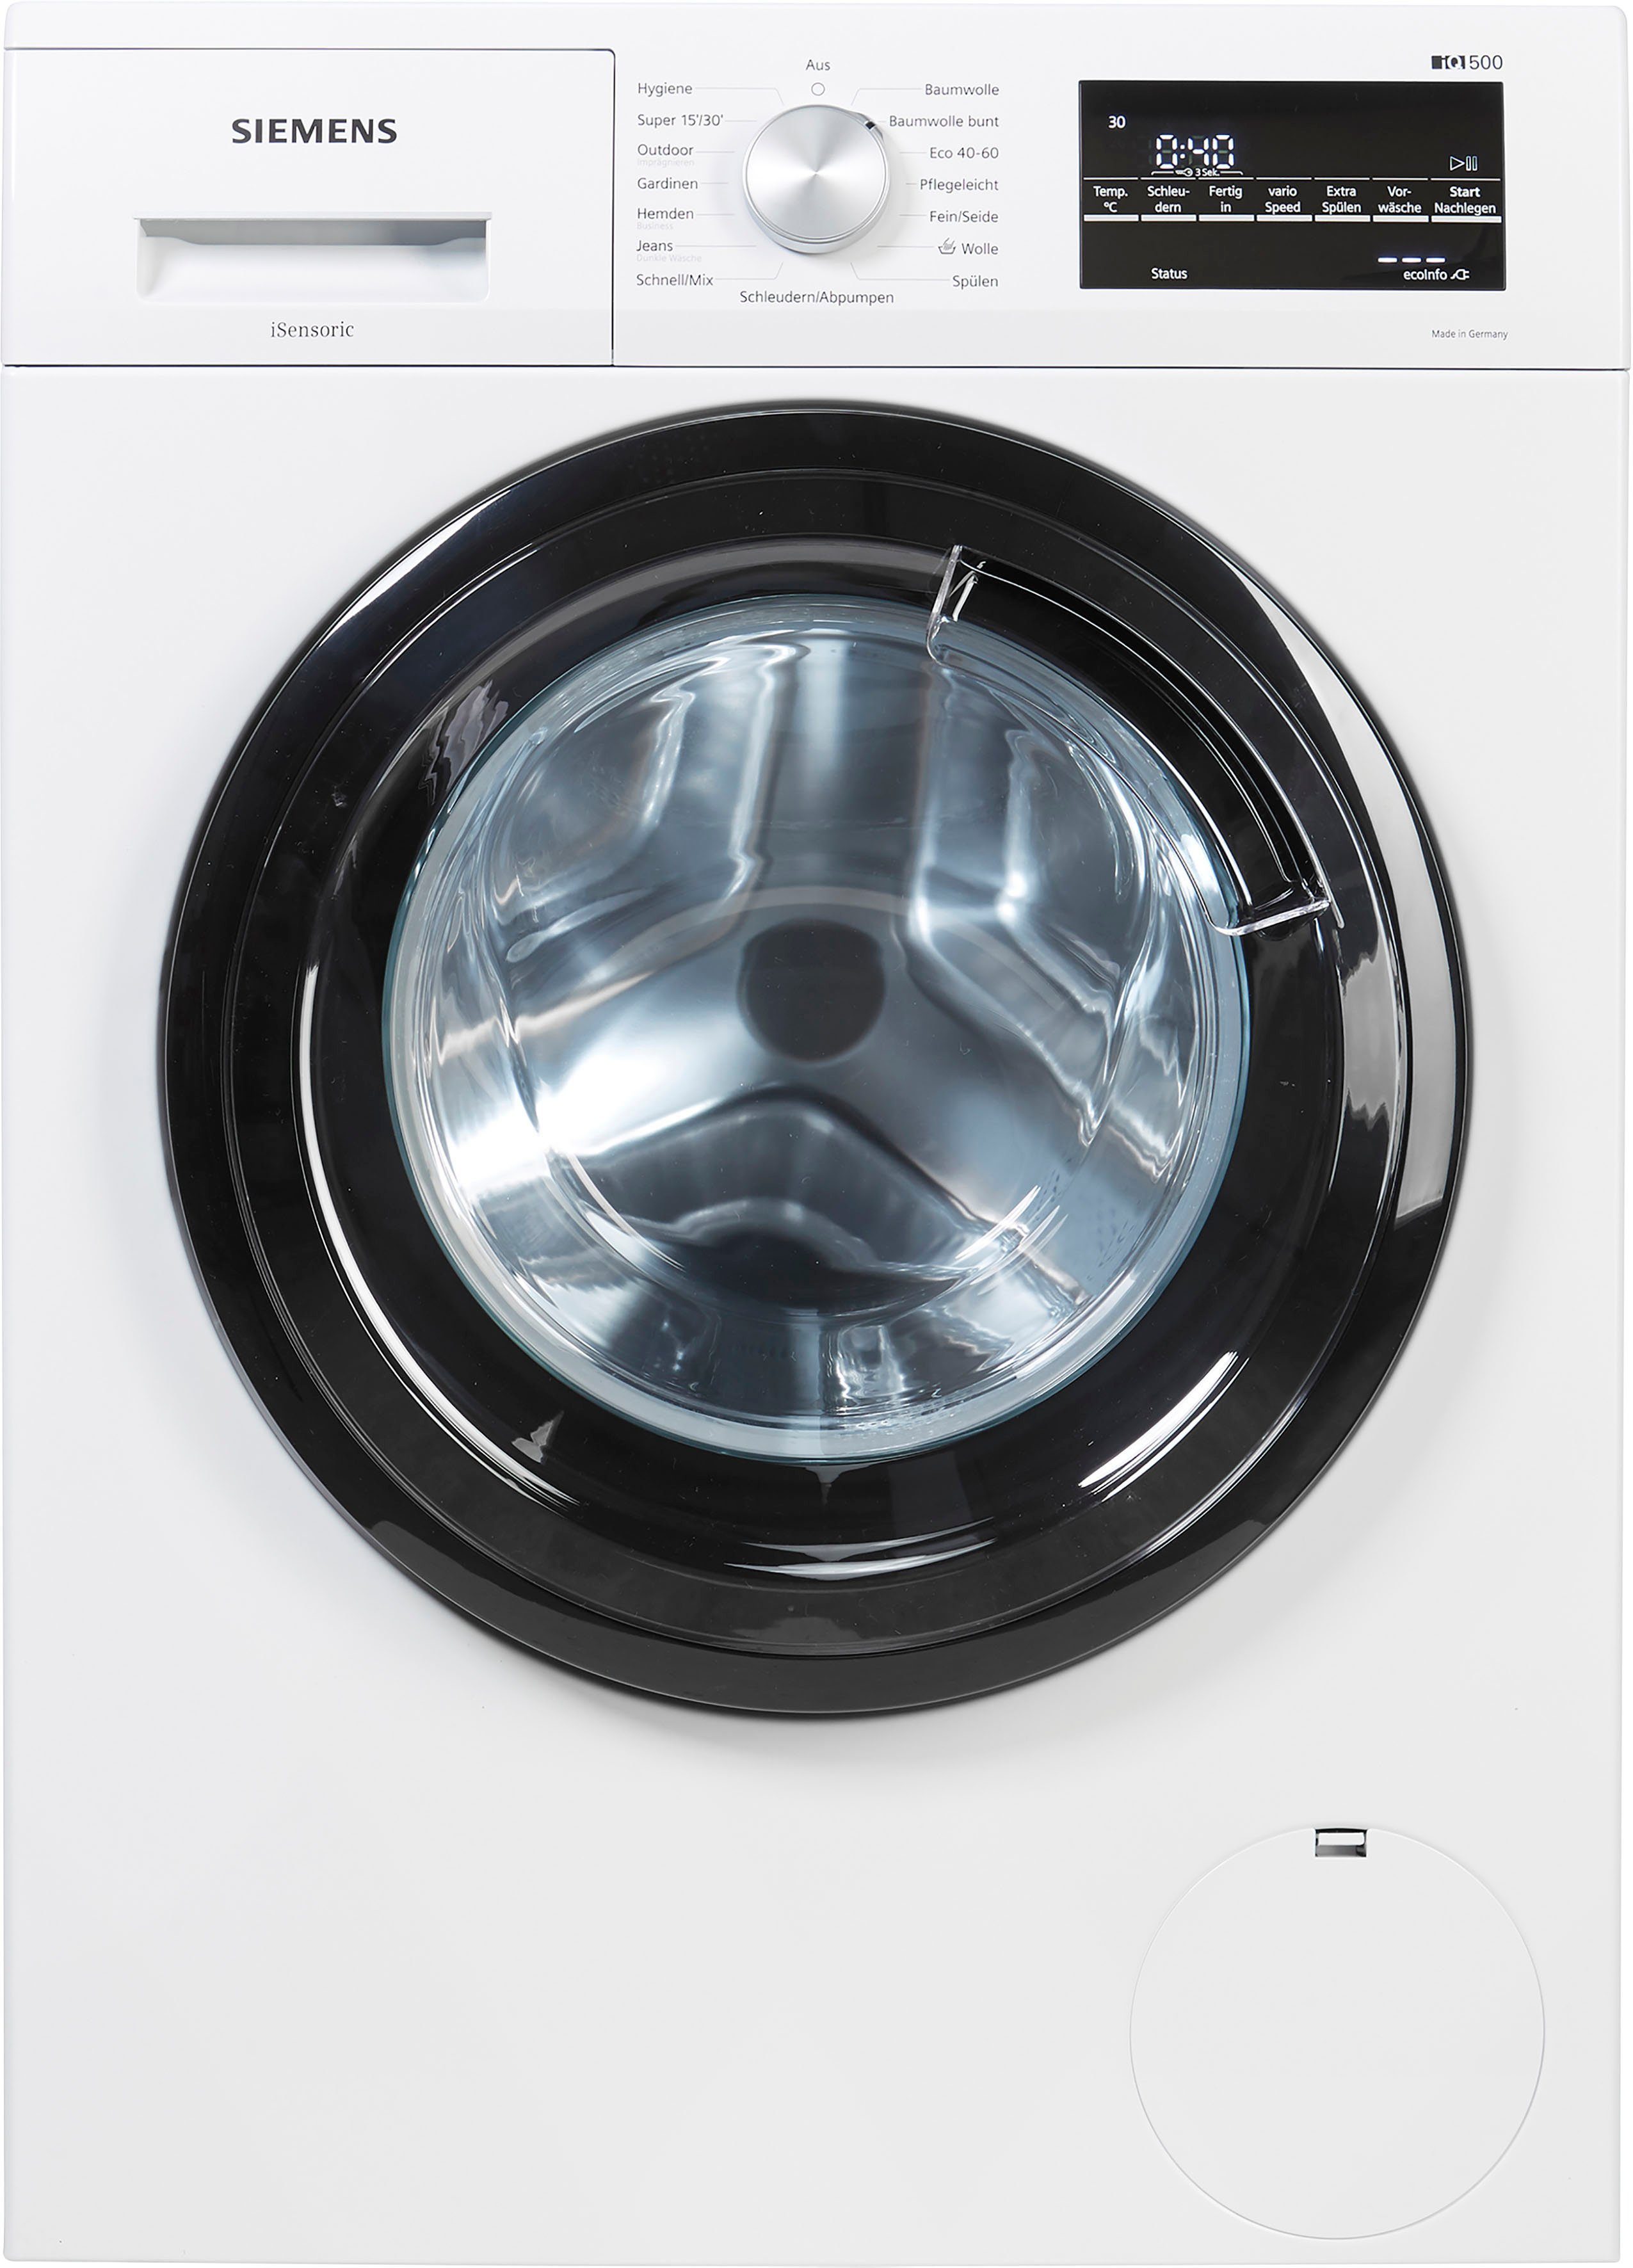 SIEMENS Waschmaschine iQ500 WM14G400, 8 kg, 1400 U/min